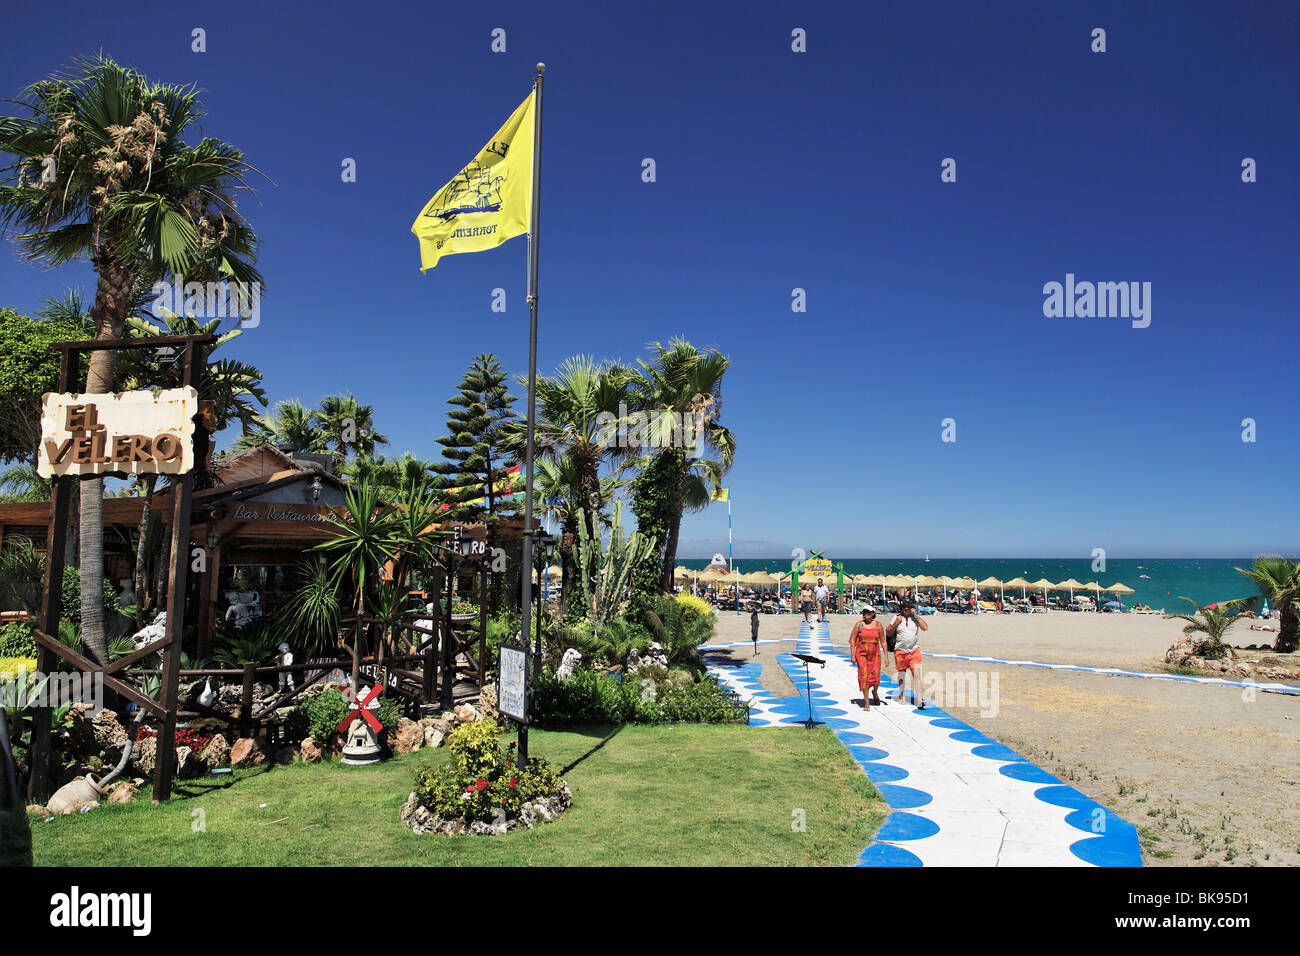 Bar de plage, Marbella, Andalousie, Espagne Banque D'Images